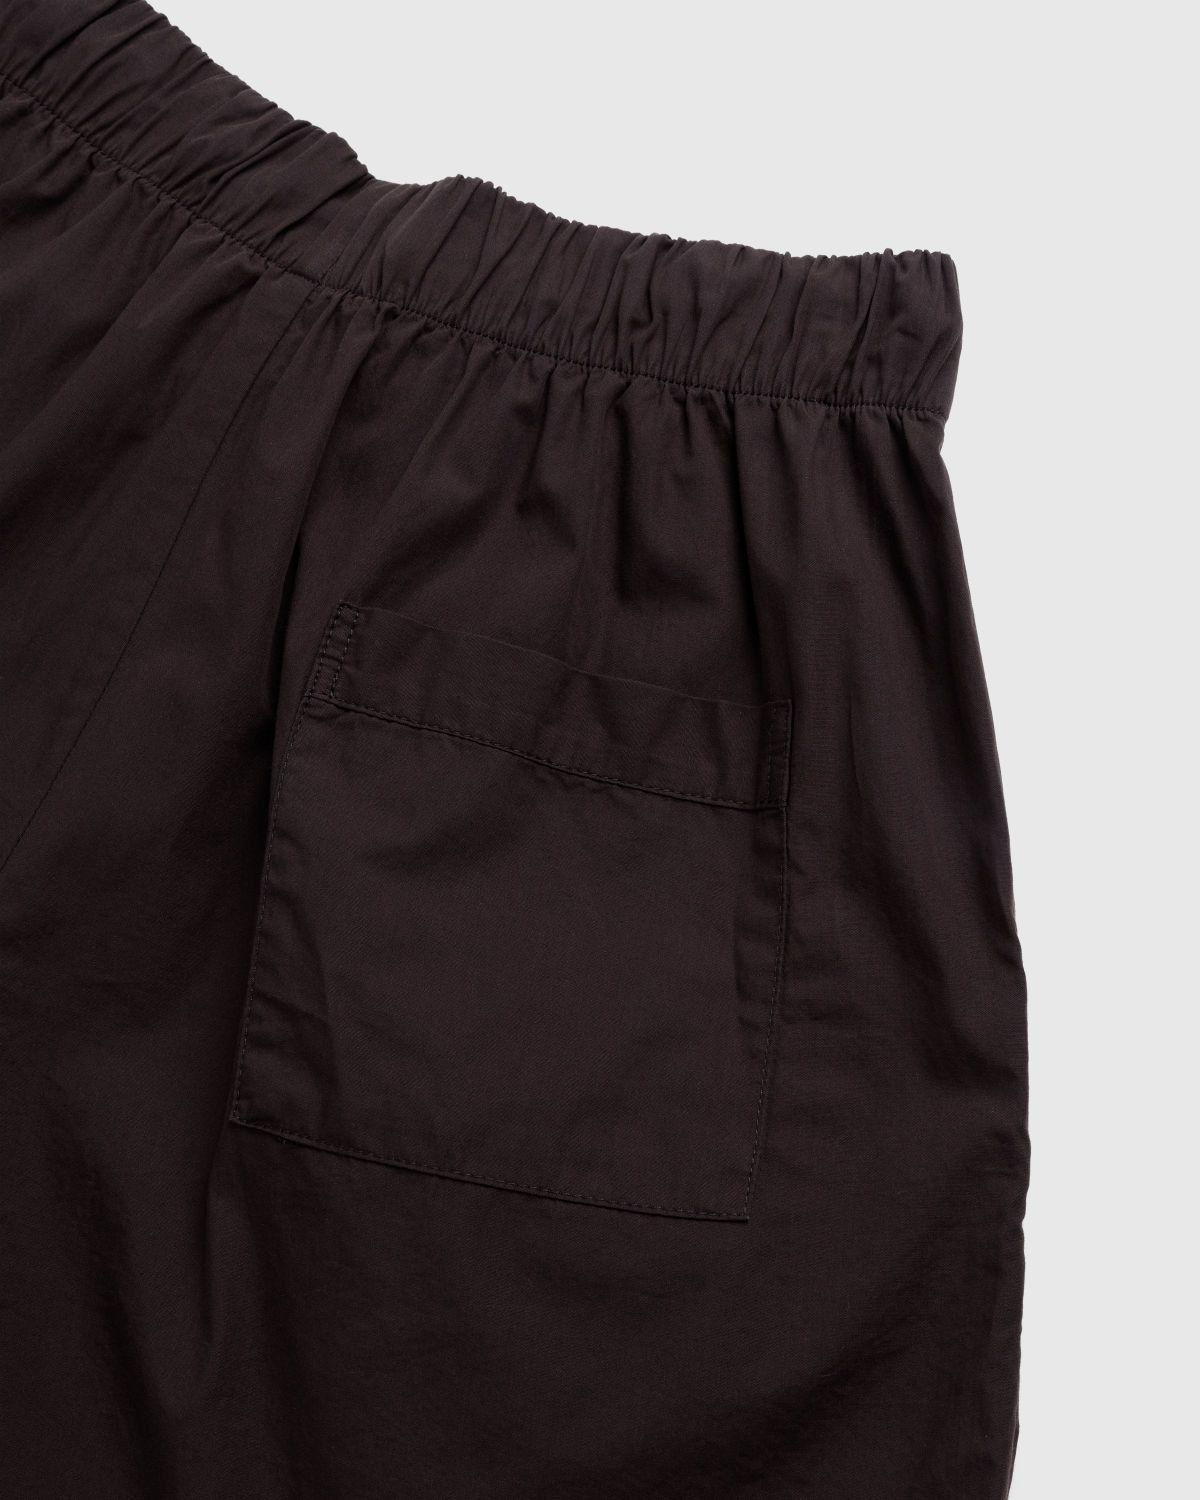 Tekla – Cotton Poplin Pyjamas Shorts Coffee - Pyjamas - Brown - Image 4